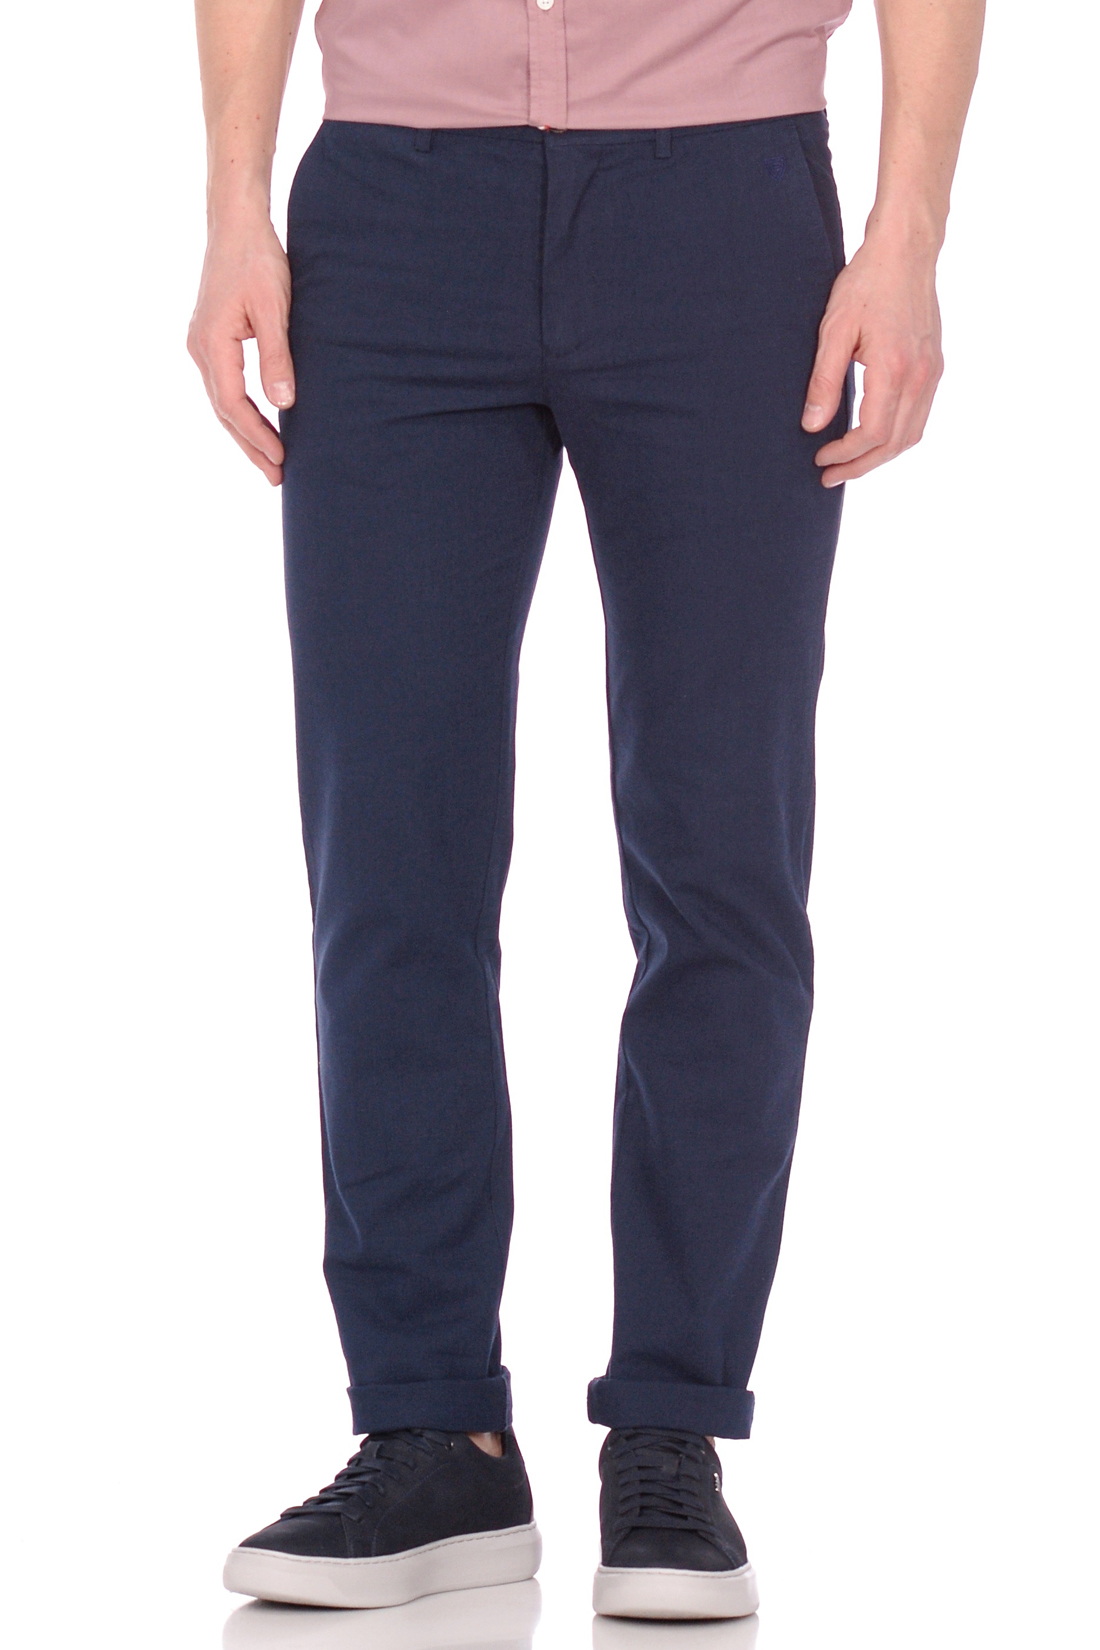 Костюмные брюки (арт. baon B799005), размер XL, цвет синий Костюмные брюки (арт. baon B799005) - фото 4